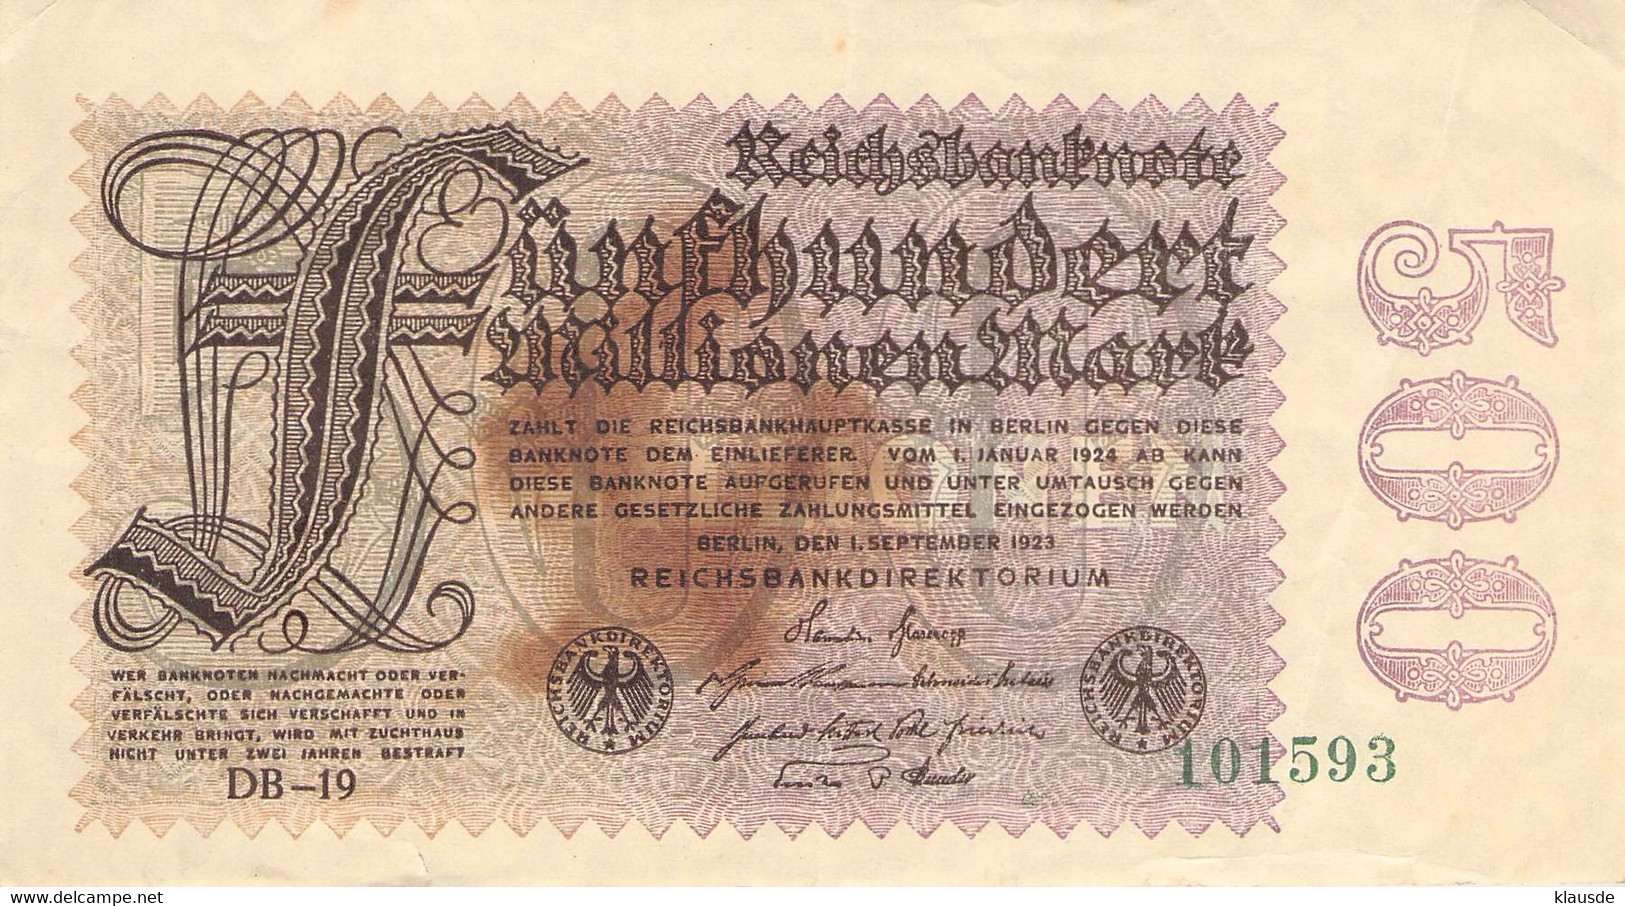 500 Mio Mark Deutsche Reichsbanknote VG/G (IV) - 500 Millionen Mark